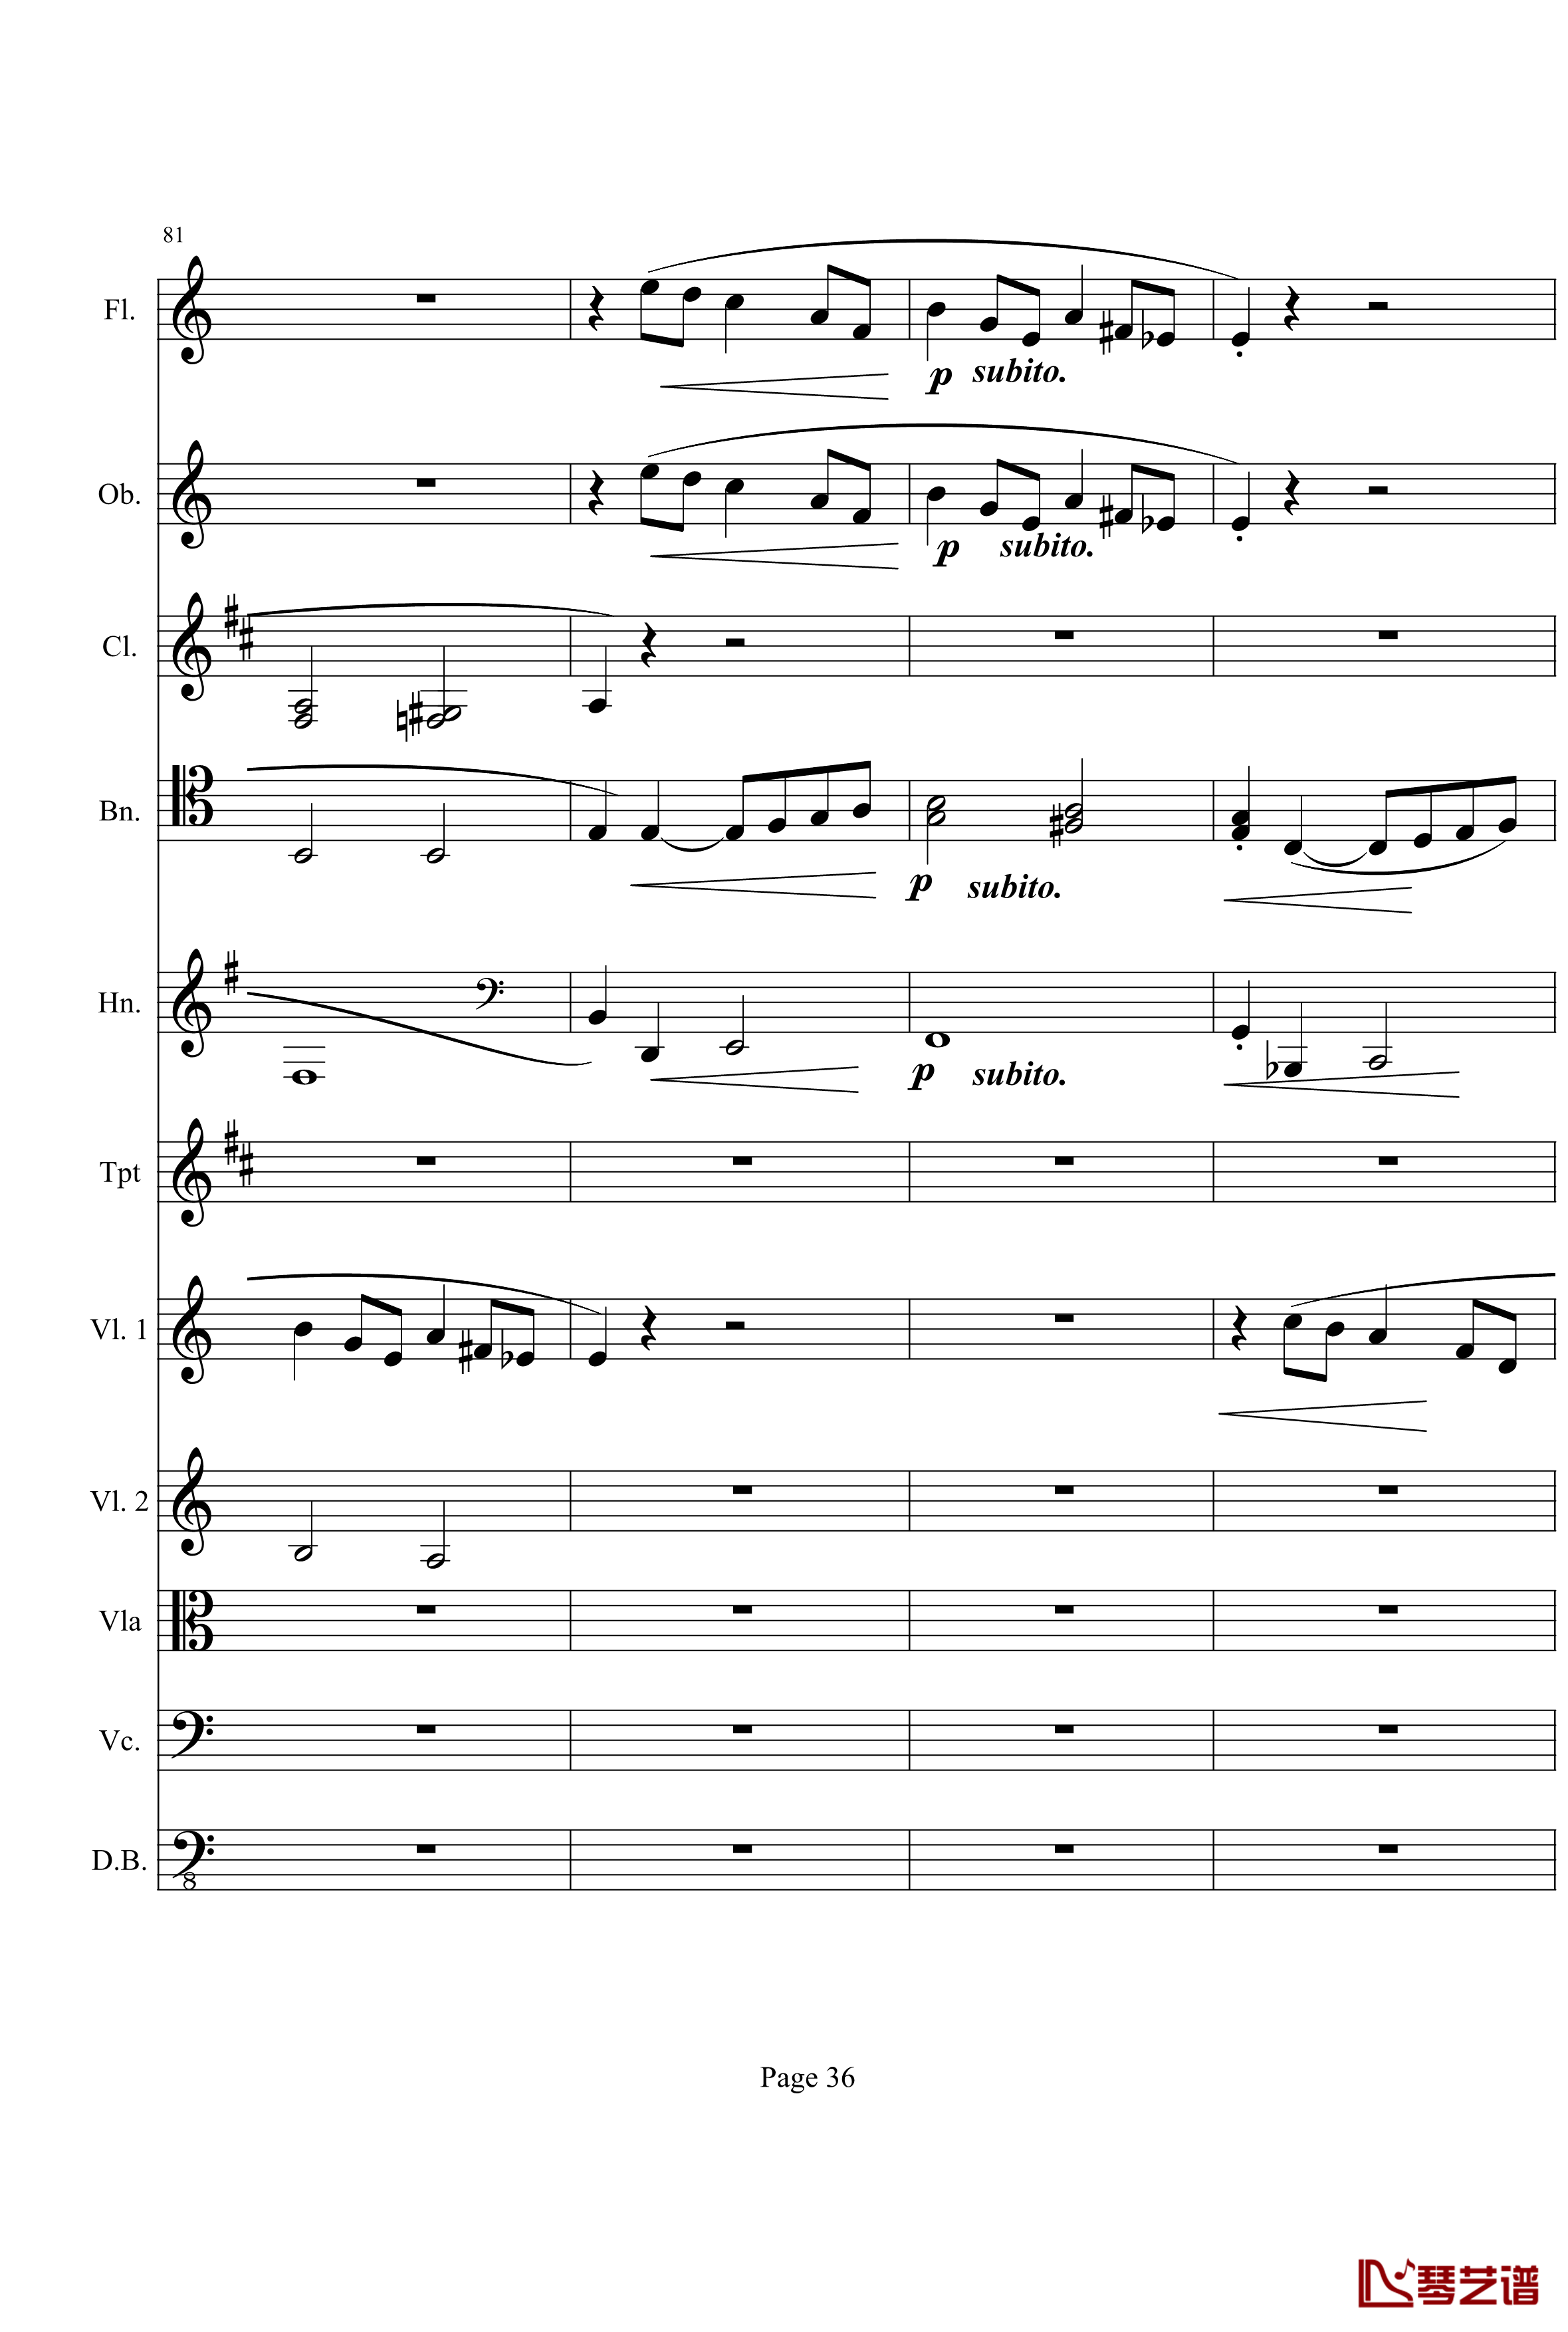 奏鸣曲之交响钢琴谱-第21-Ⅰ-贝多芬-beethoven36